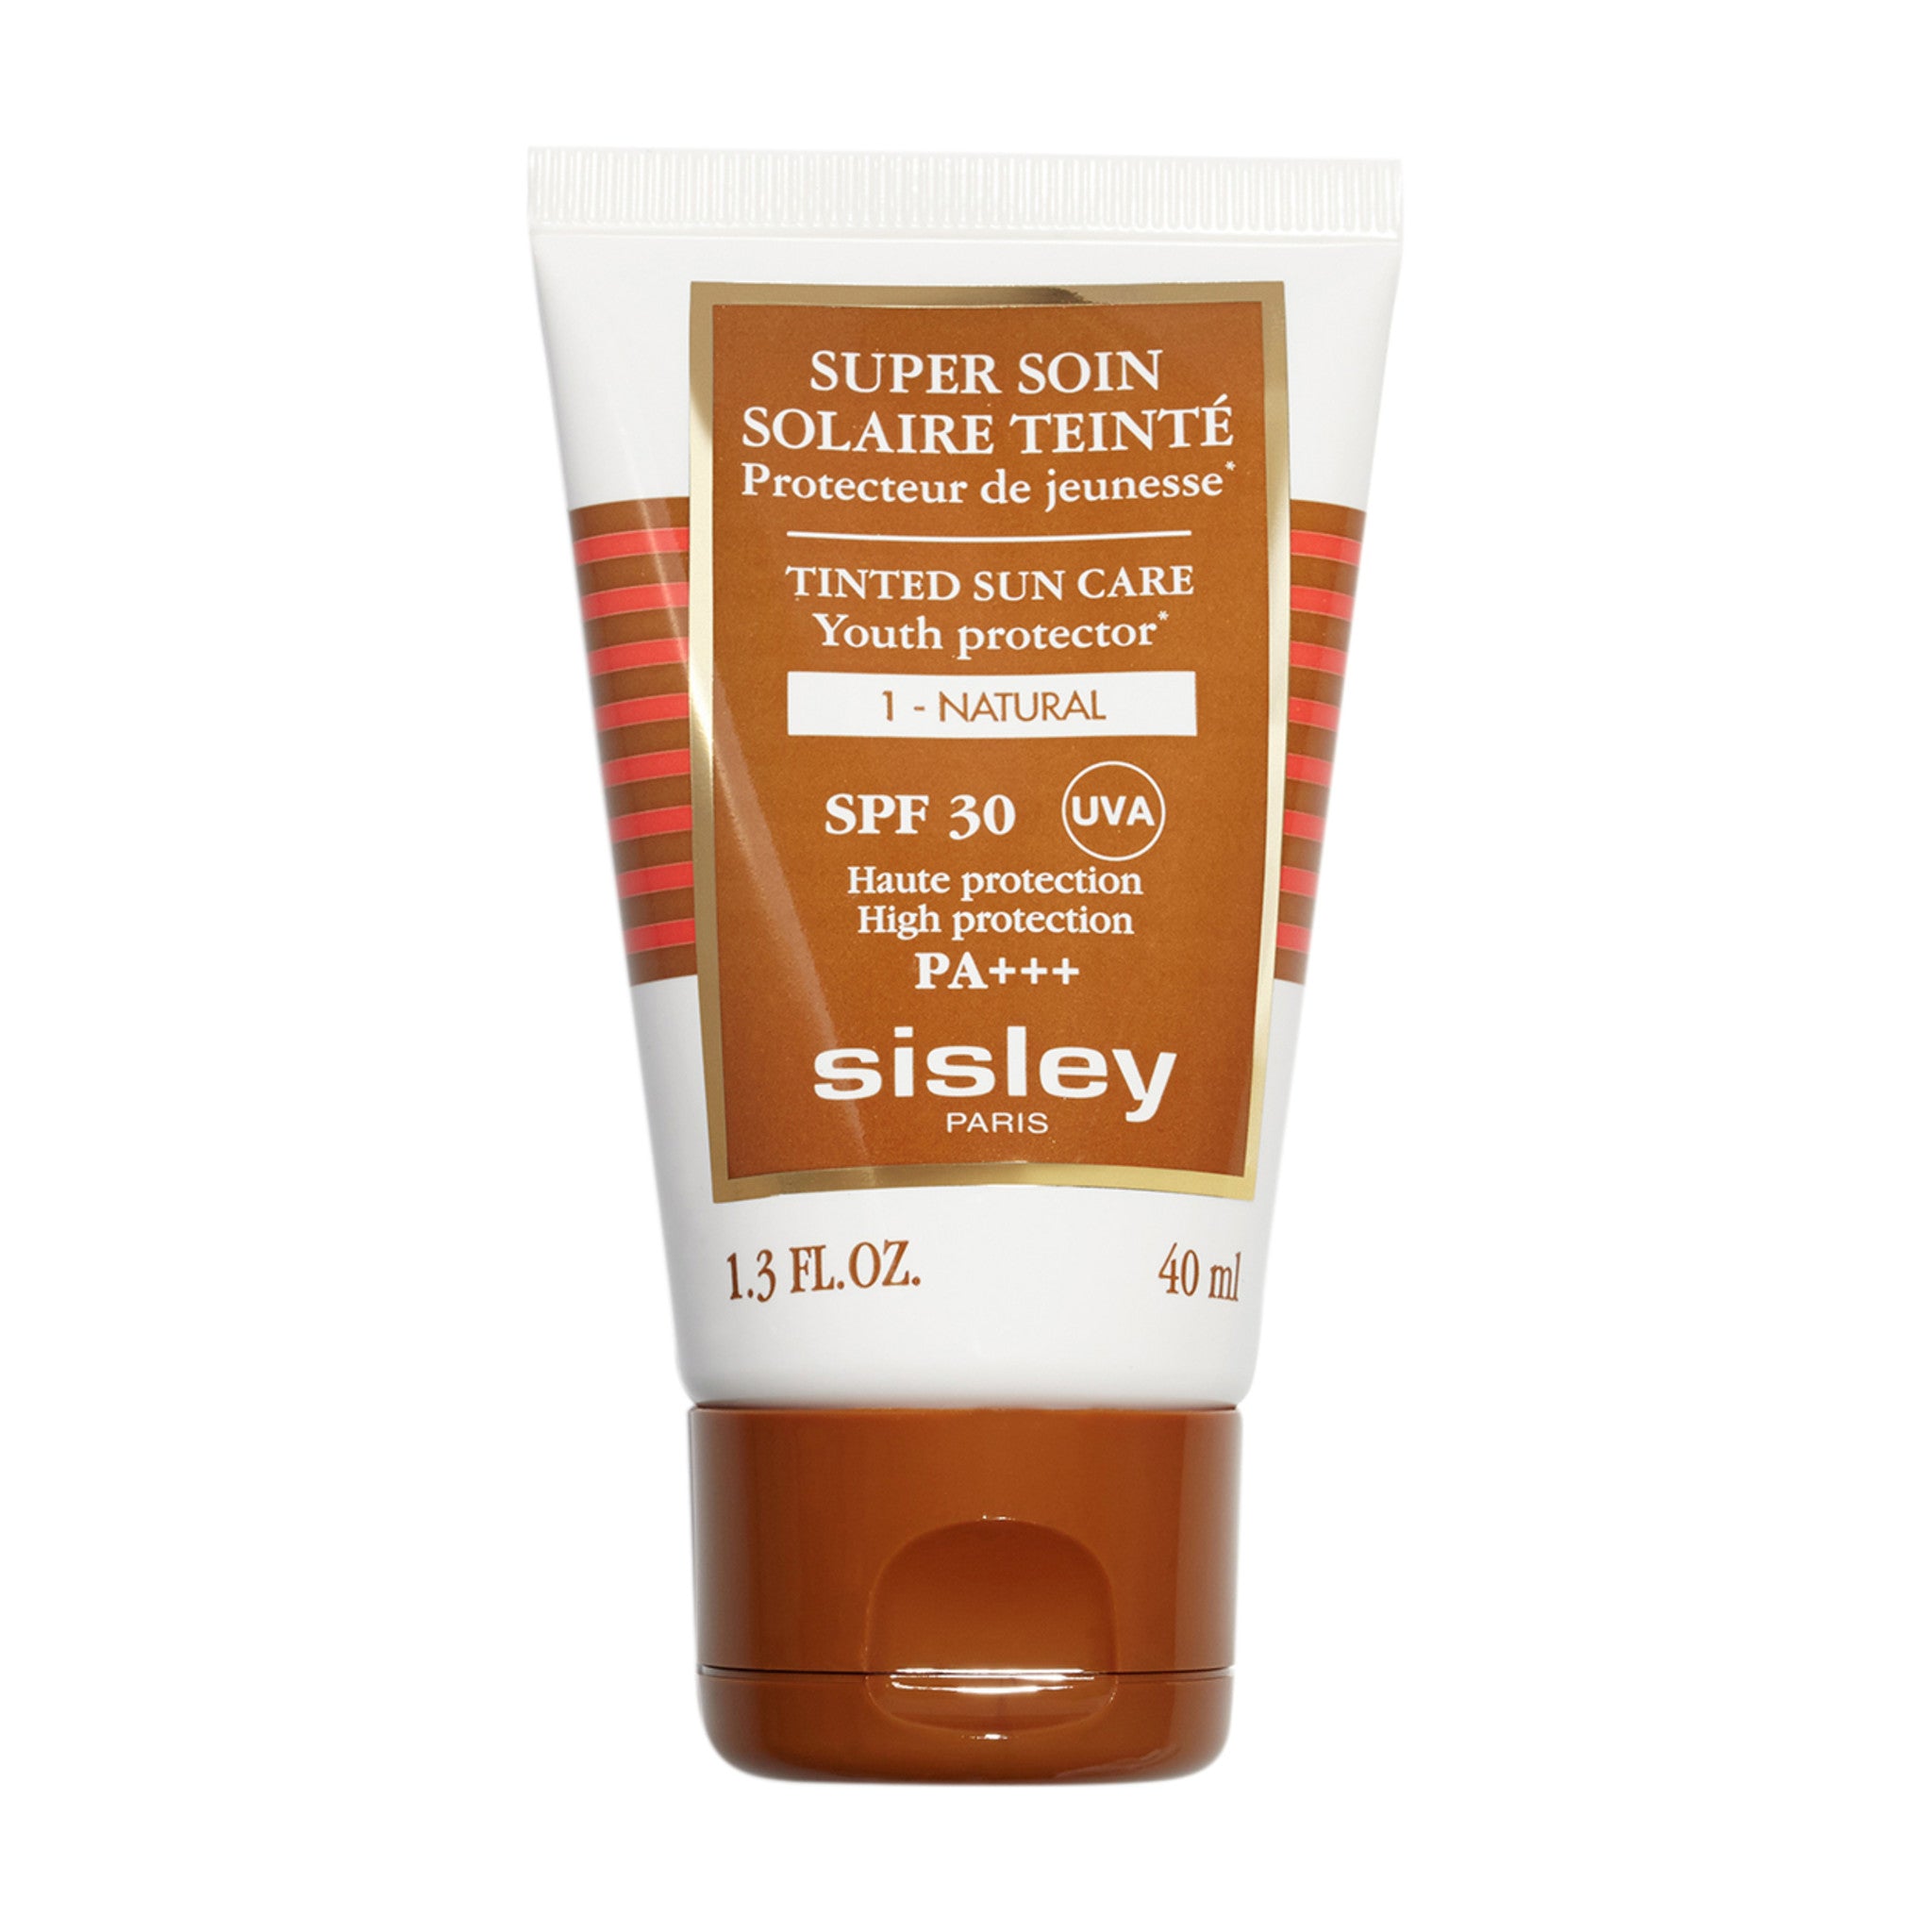 Sisley-Paris Tinted Sunscreen Cream SPF 30 Color/Shade variant: 1 Natural main image.